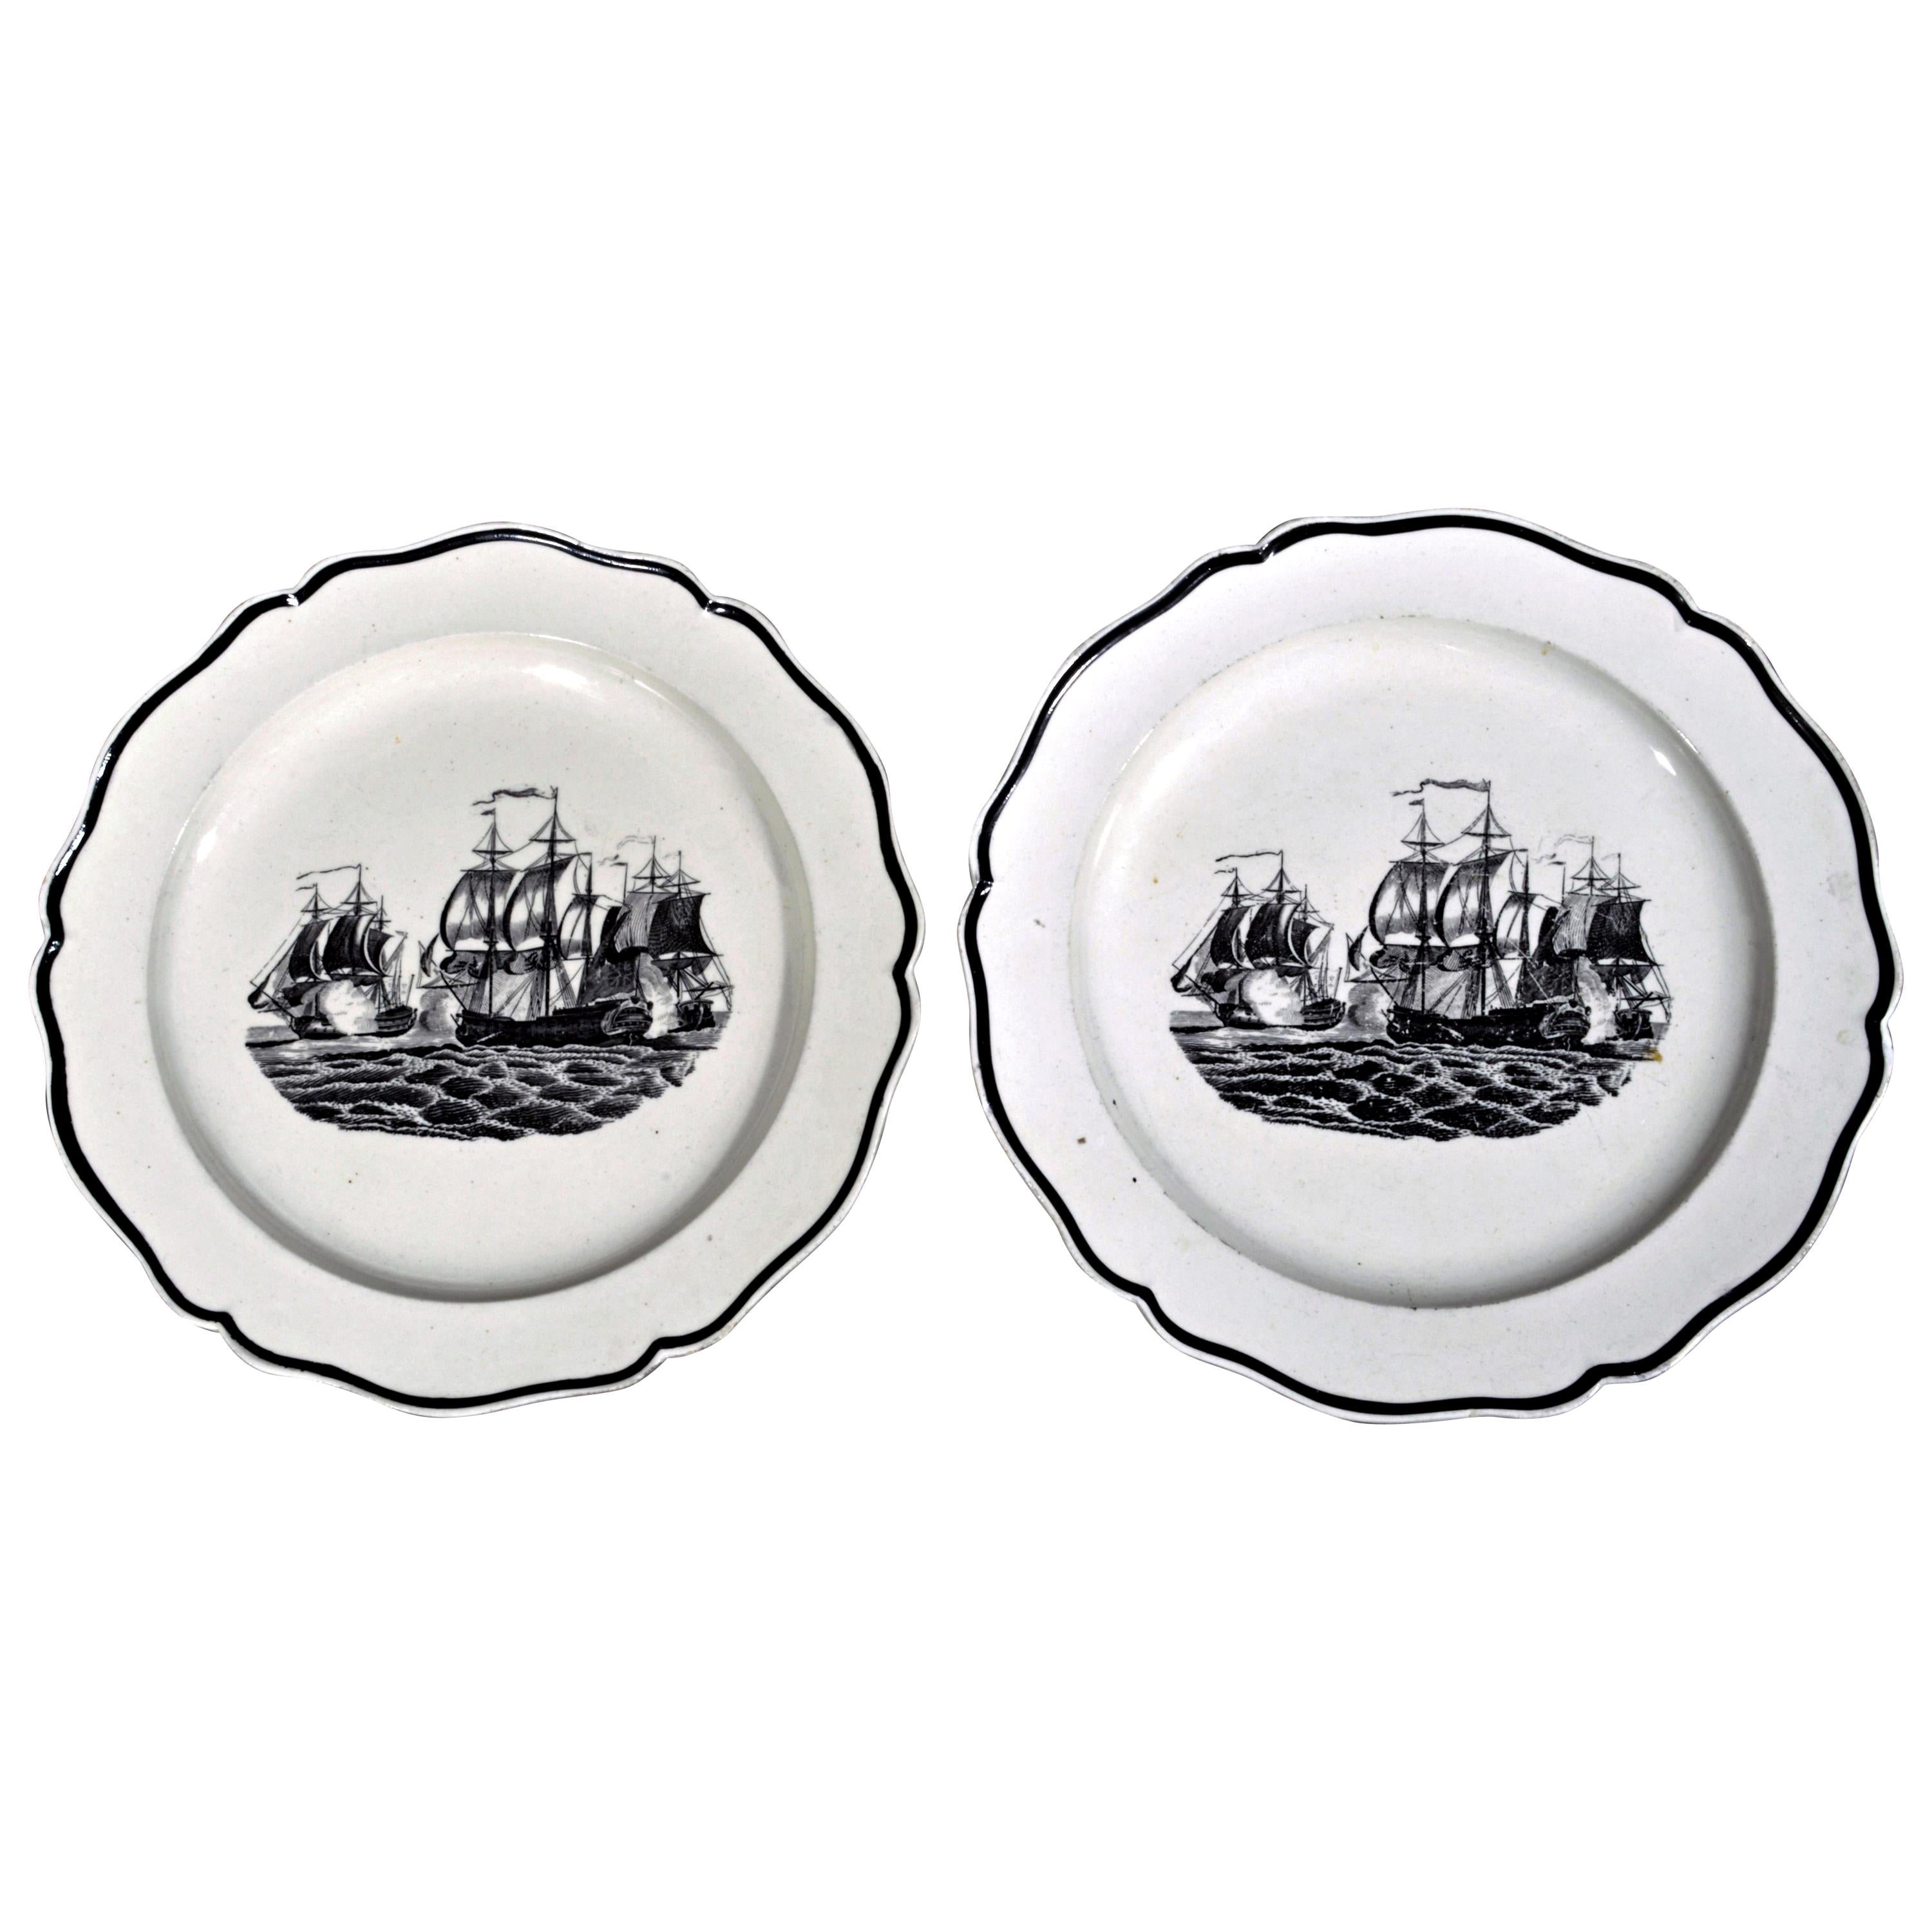 Liverpooler Perlenware mit Schiffsdekor, um 1800